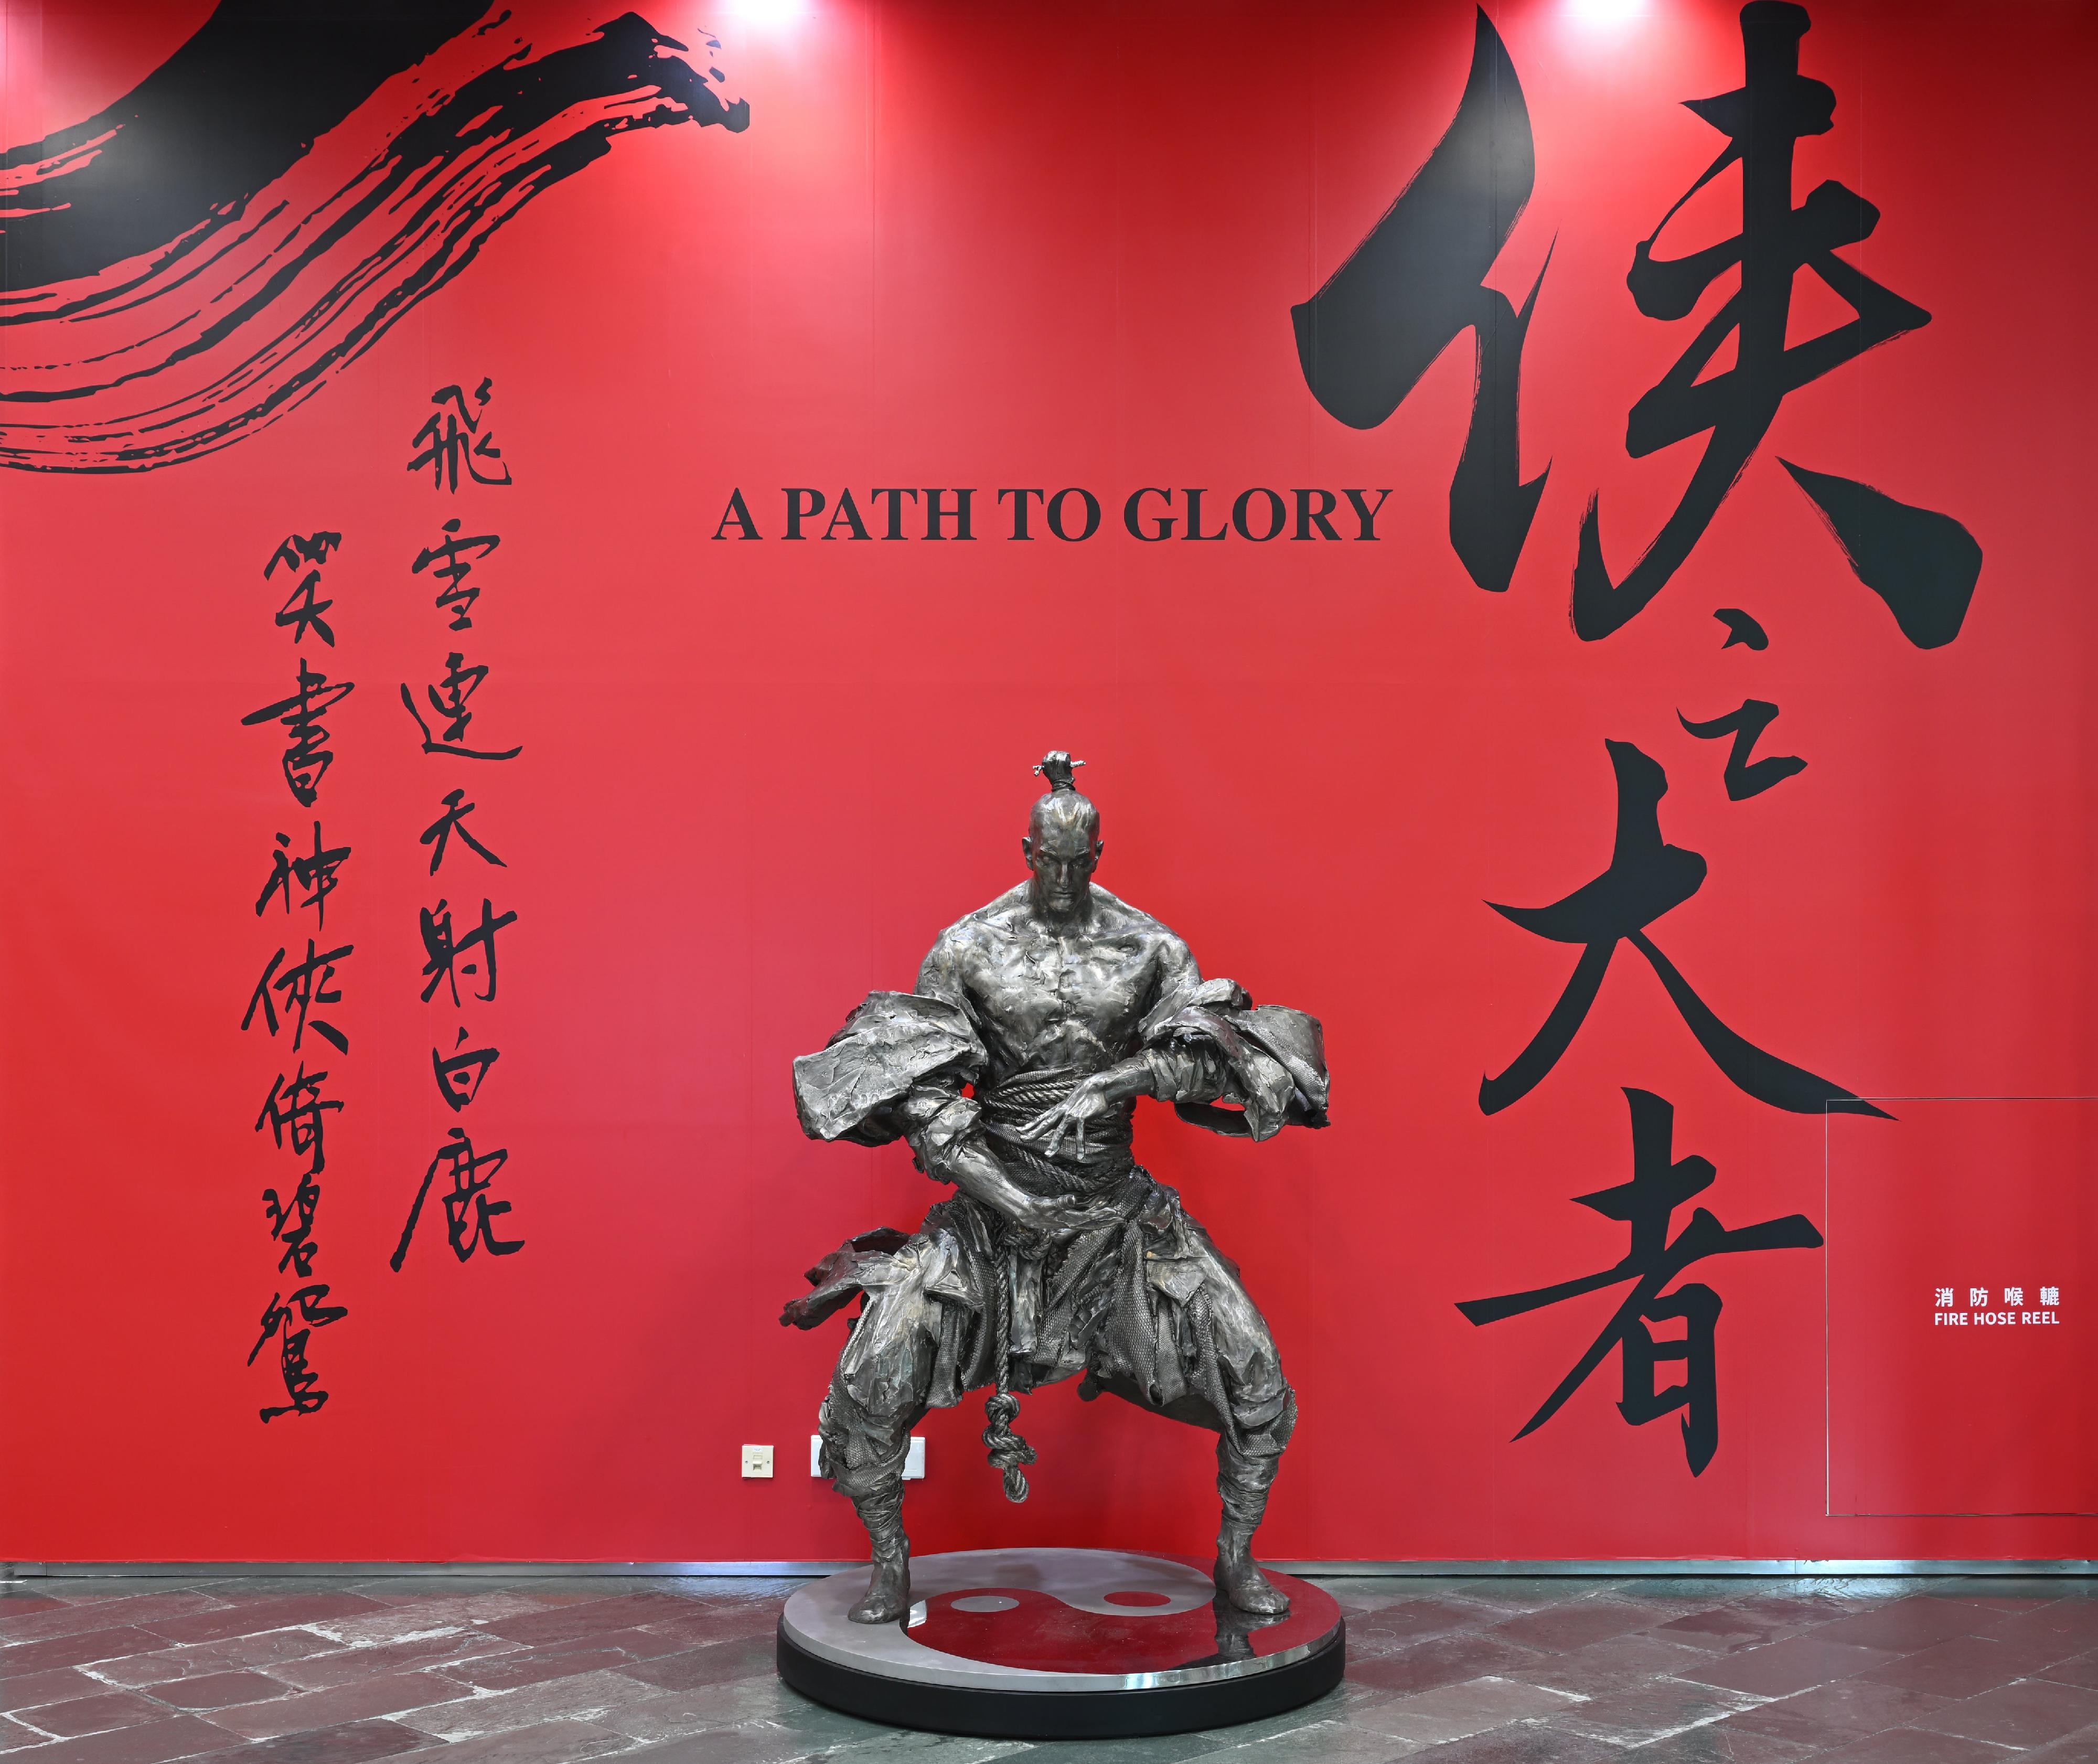 香港文化博物馆为纪念查良镛博士（金庸）百年诞辰，即将举行「侠之大者—金庸百年诞辰纪念．任哲雕塑展」，展期由三月十六日至十月七日。